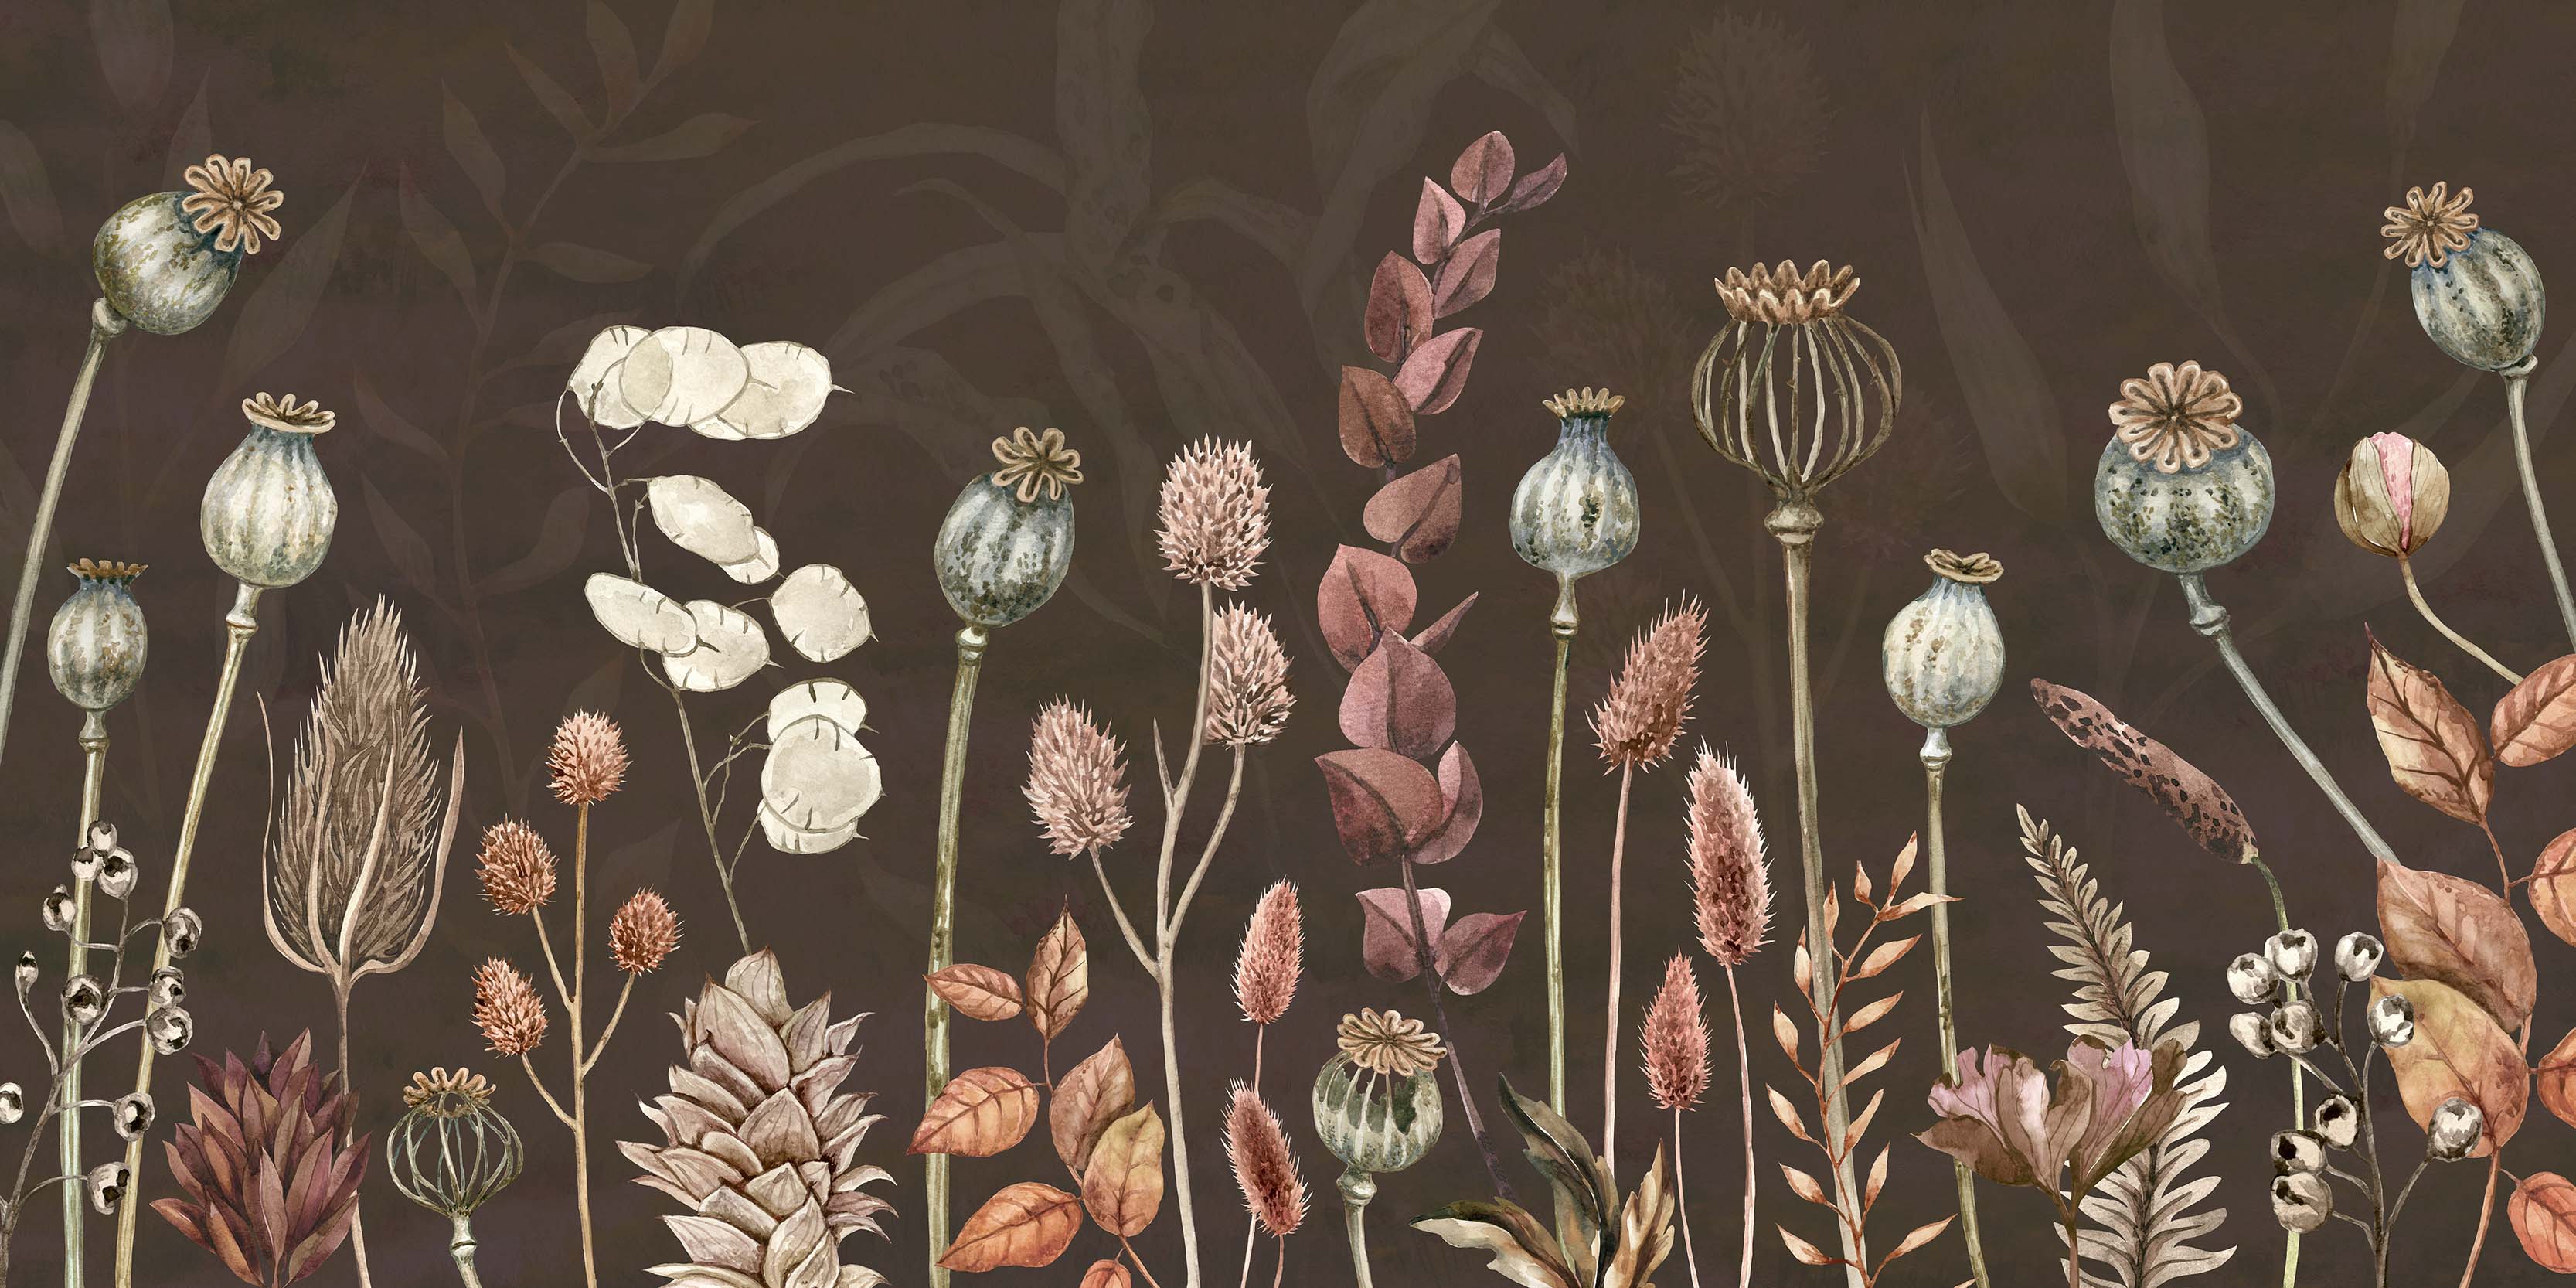 Herfst bloemen bruin - bruin aquarel botanische muurschildering